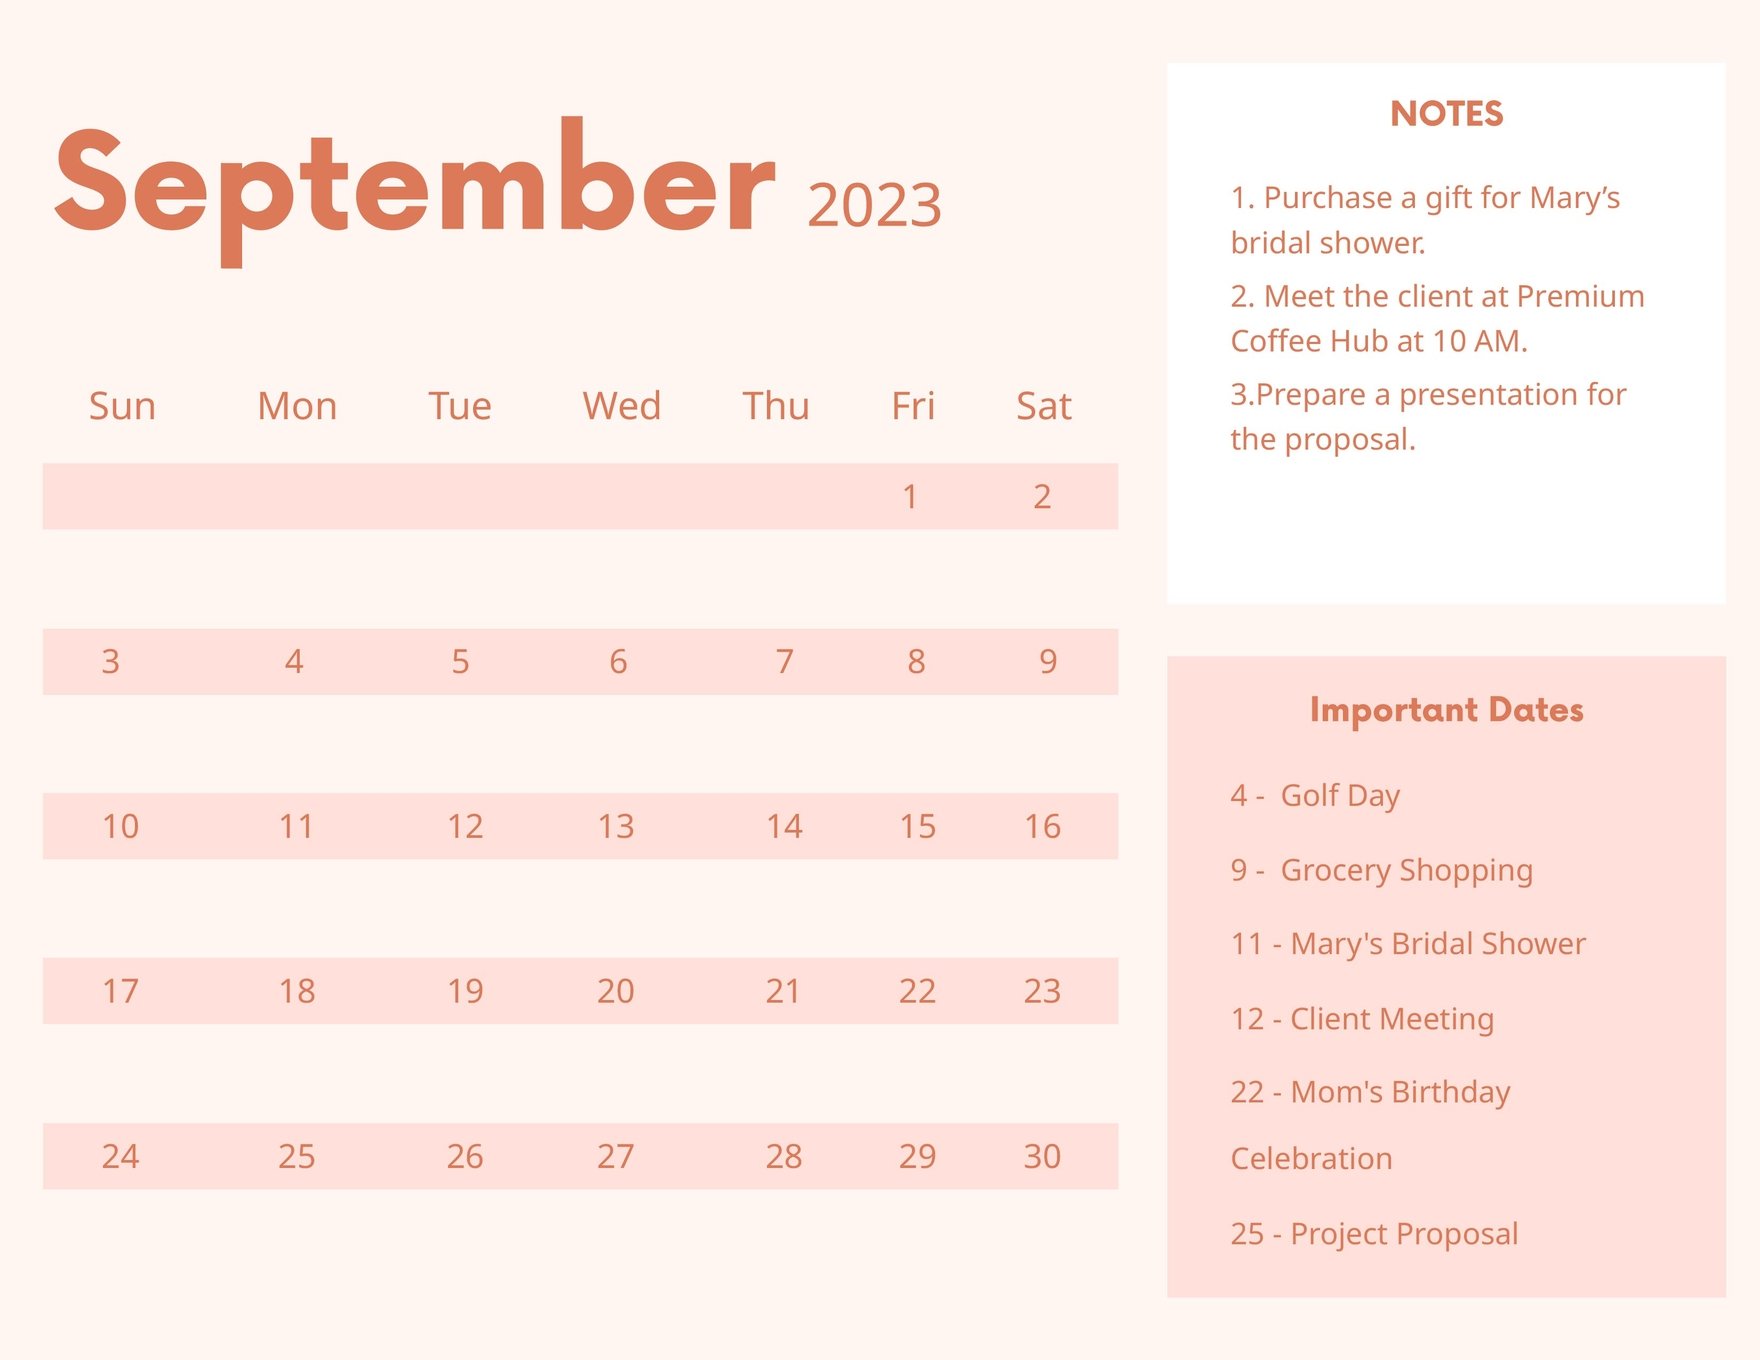 Pink September 2023 Calendar in Word, Google Docs, Excel, Google Sheets, Illustrator, EPS, SVG, JPG